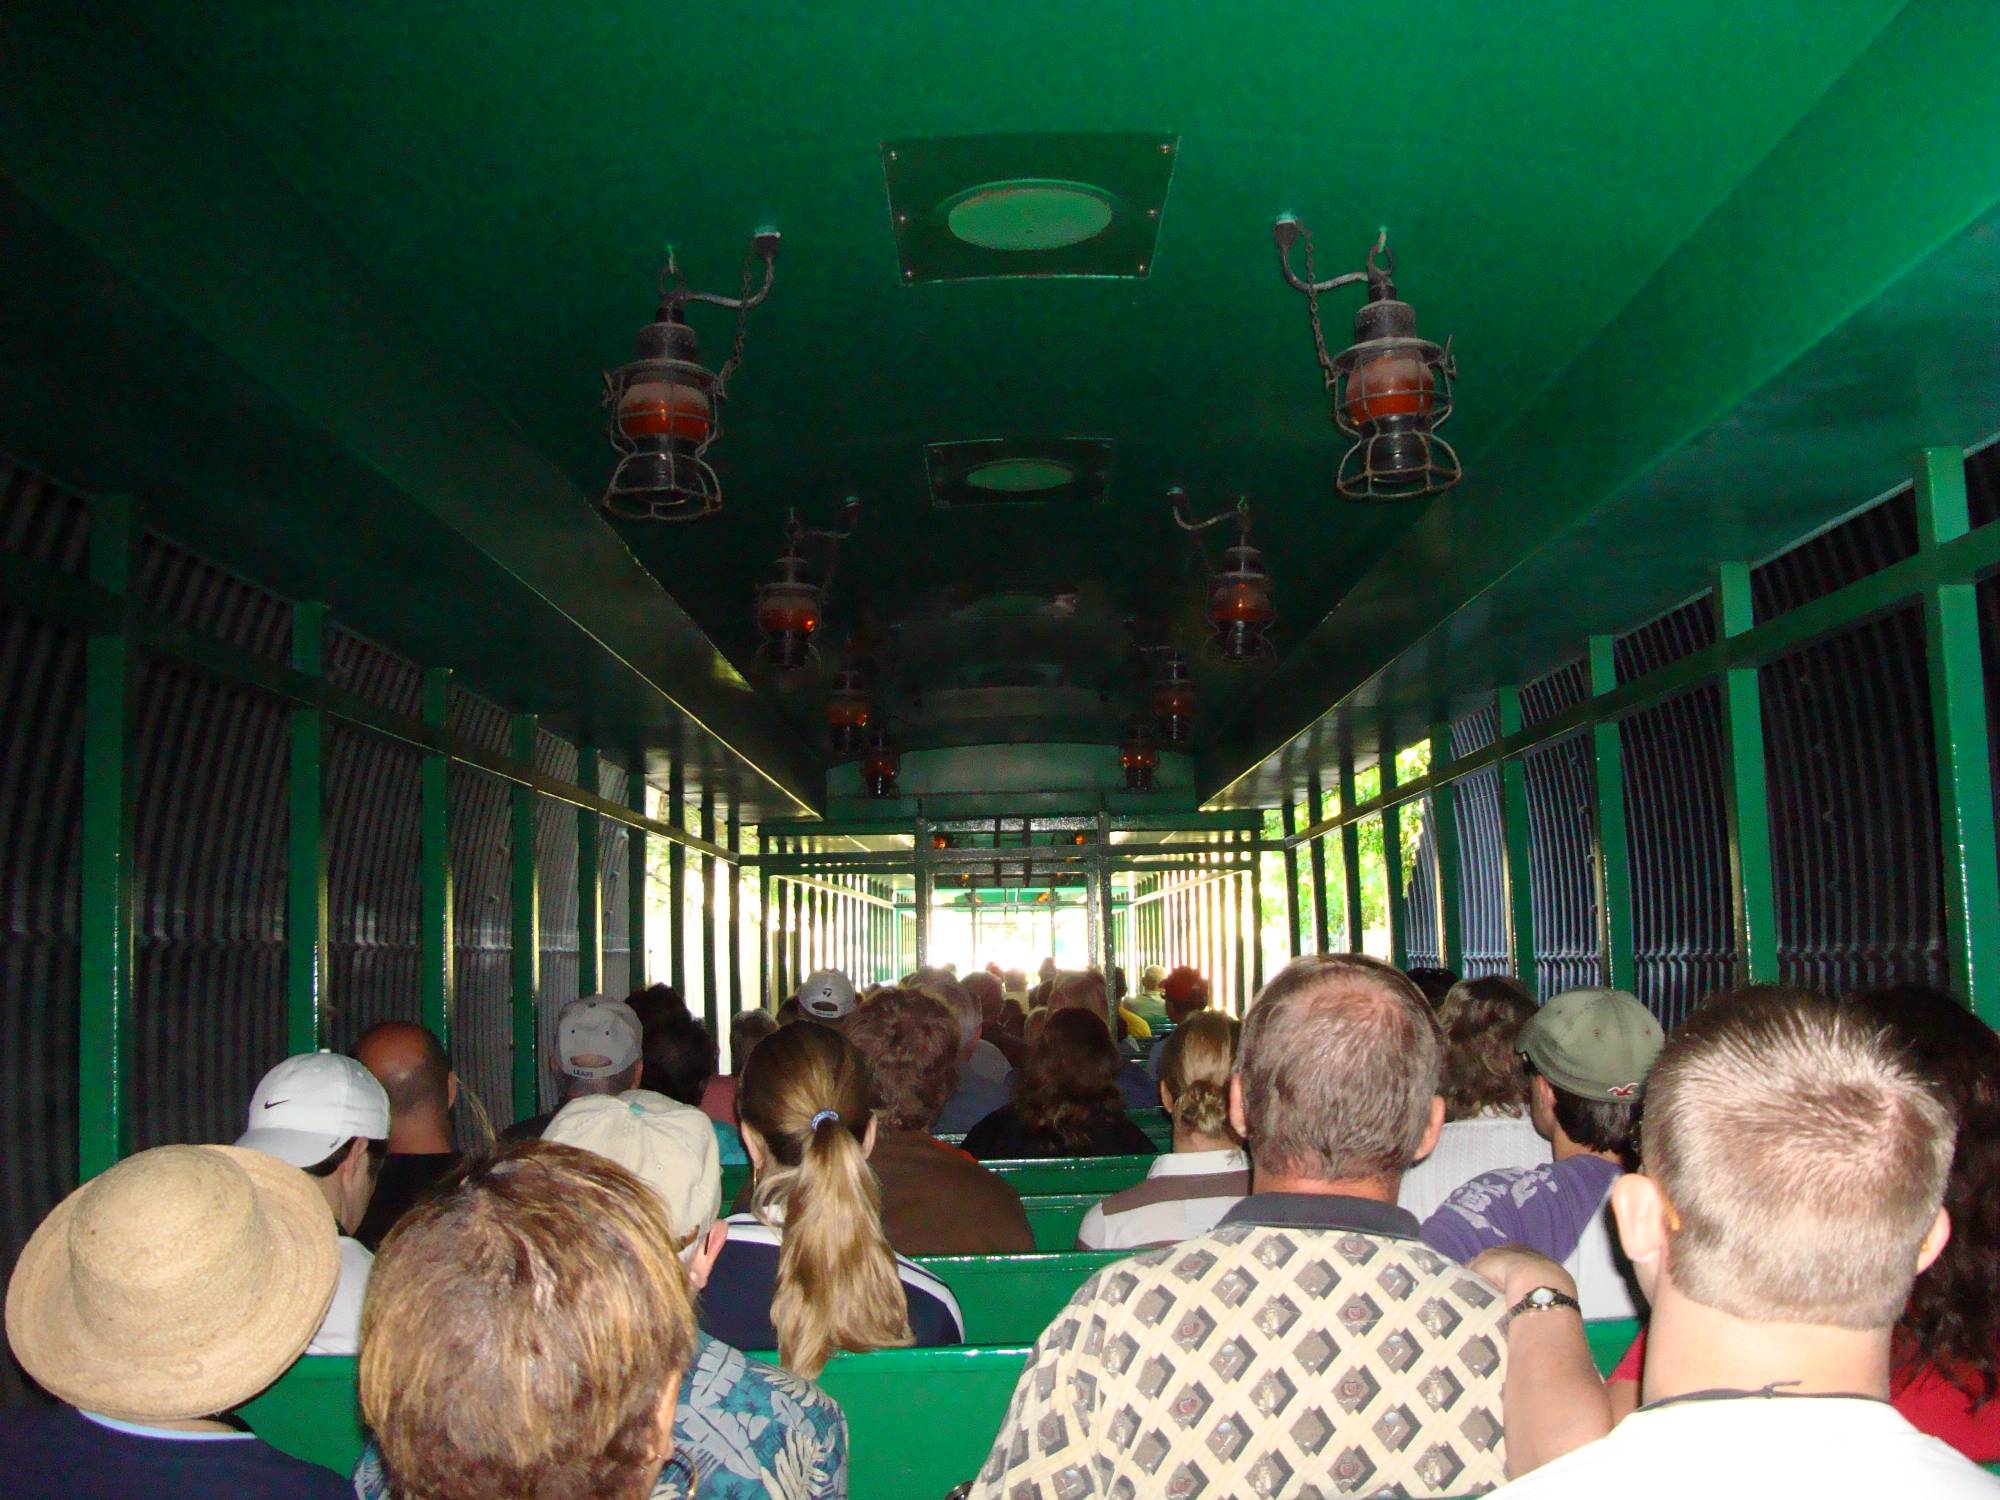 Busch Gardens Tampa - Serengeti Railway